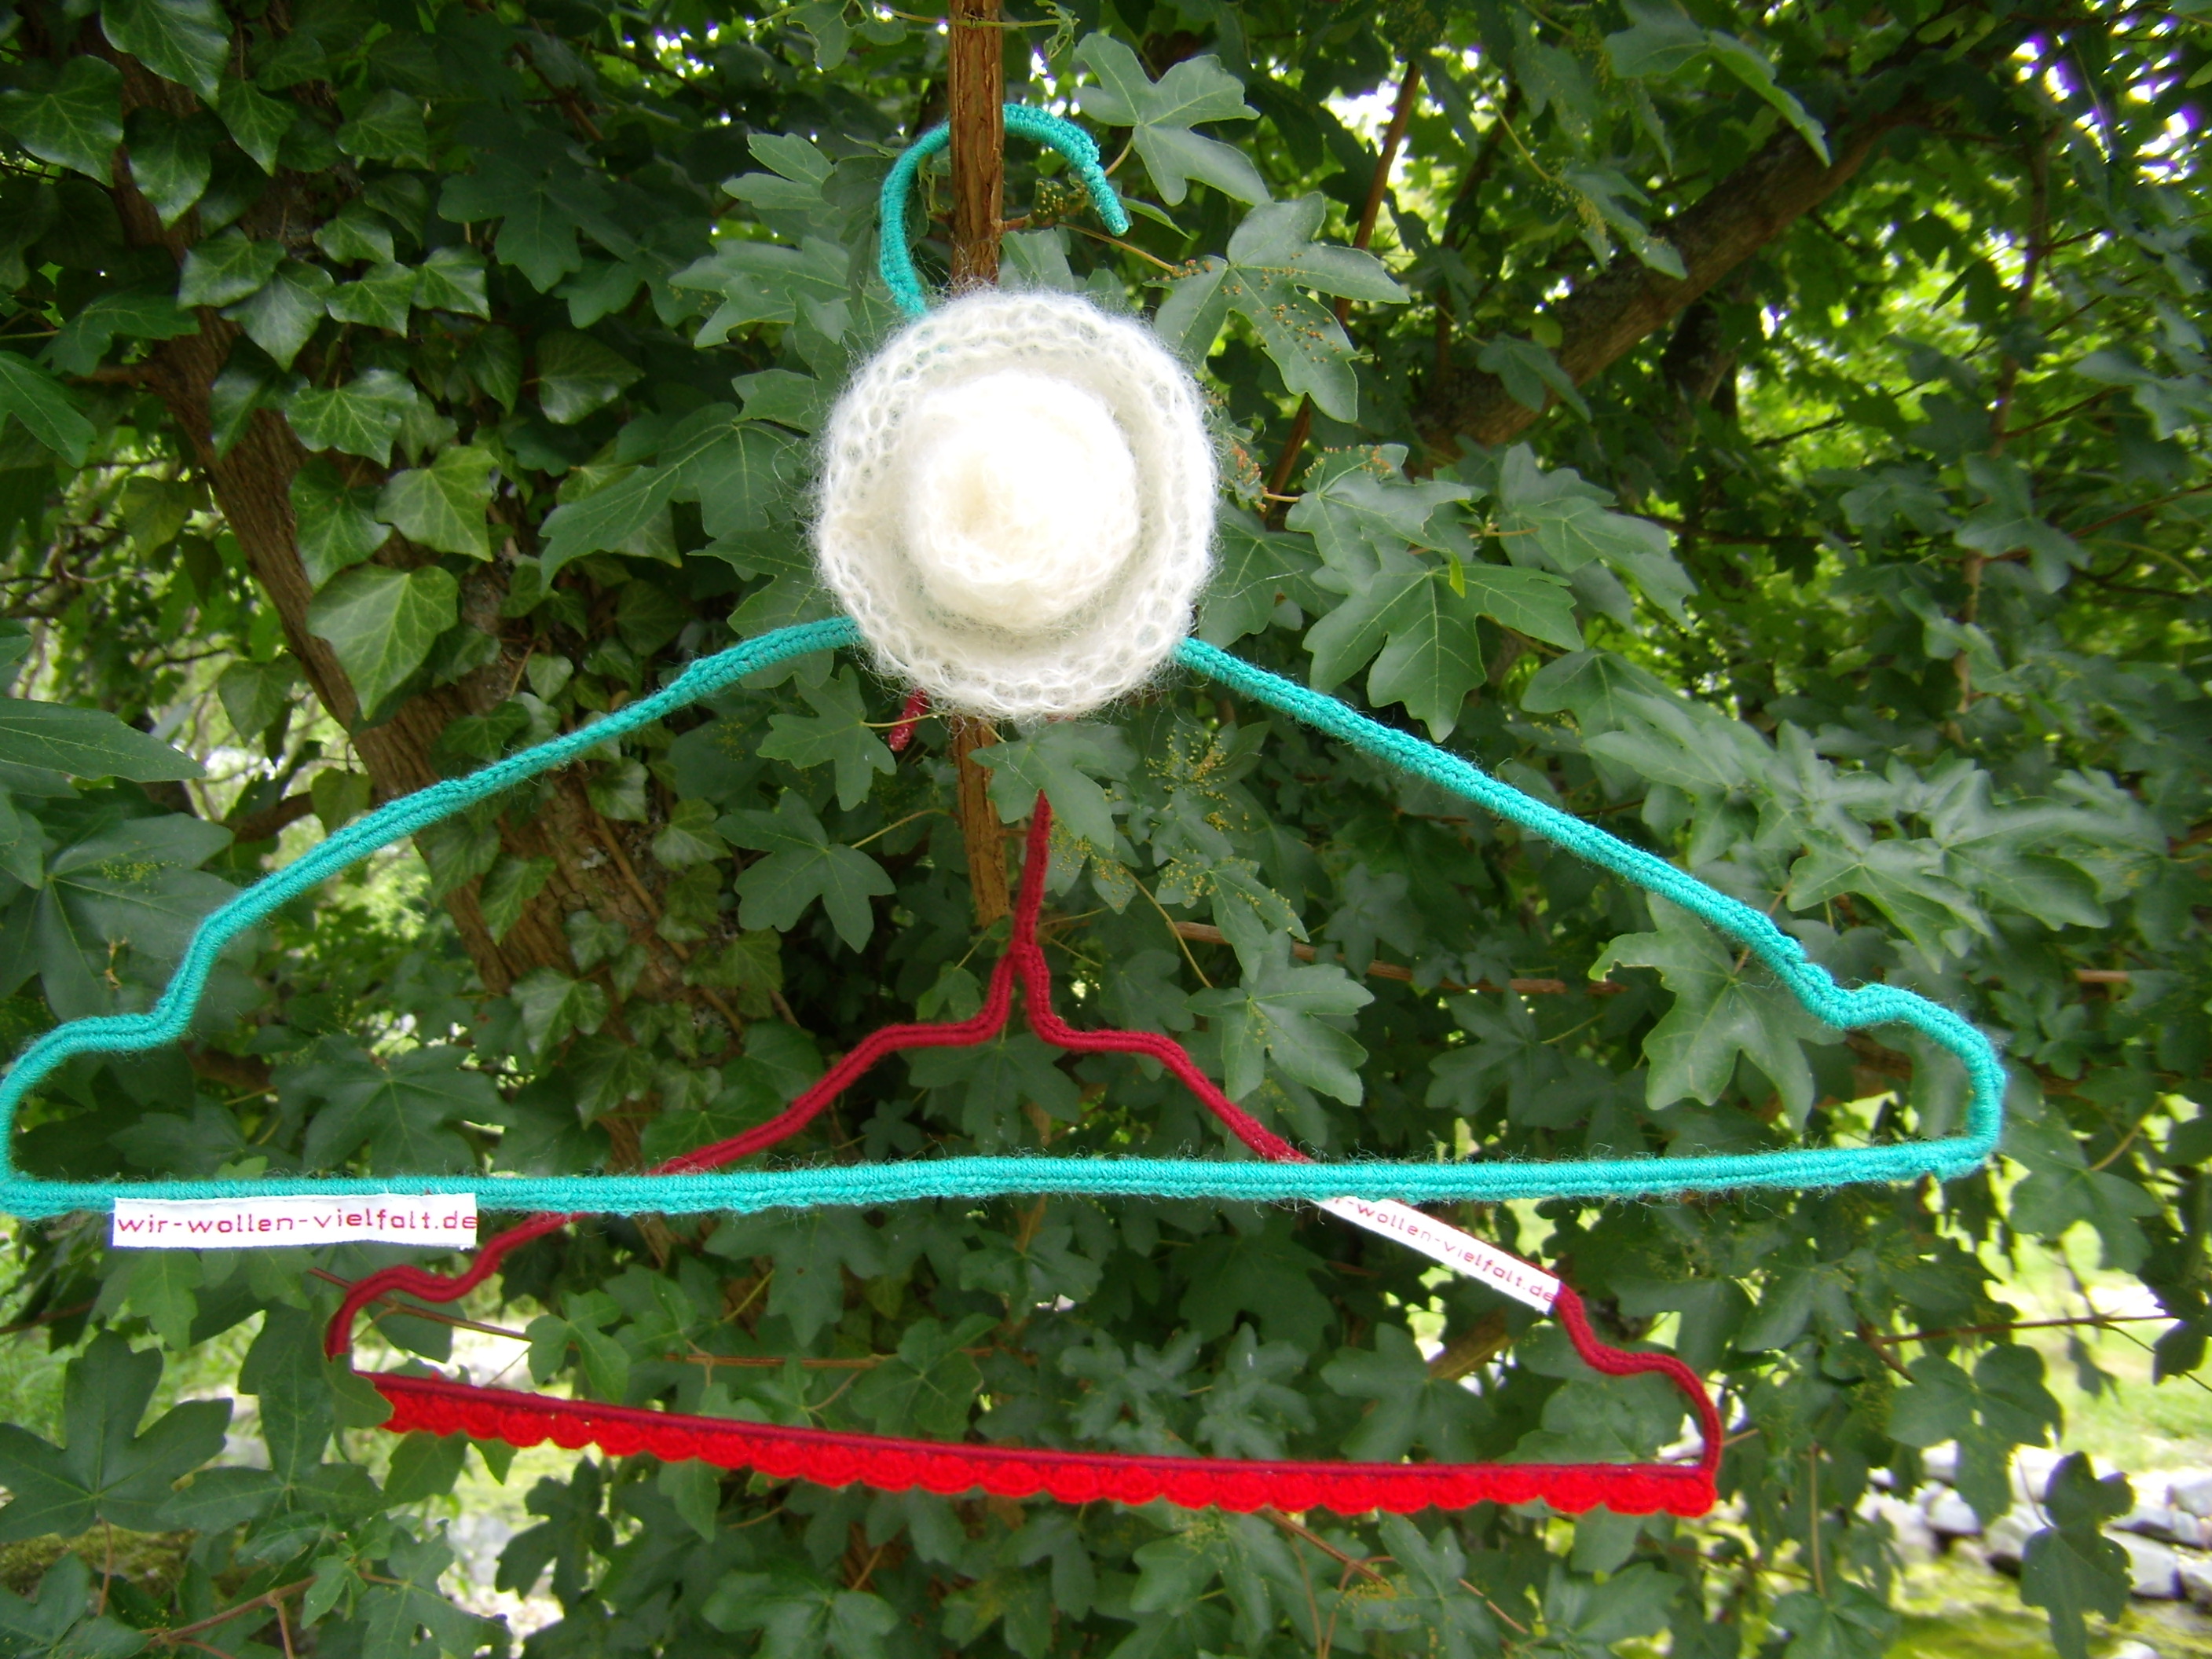 Zwei Draht-Kleiderbügel mit der Aufschift "wir-wollen-vielfalt.de", der eine rot, der andere grün umhäkelt, hängen in einem Busch voller Laub.